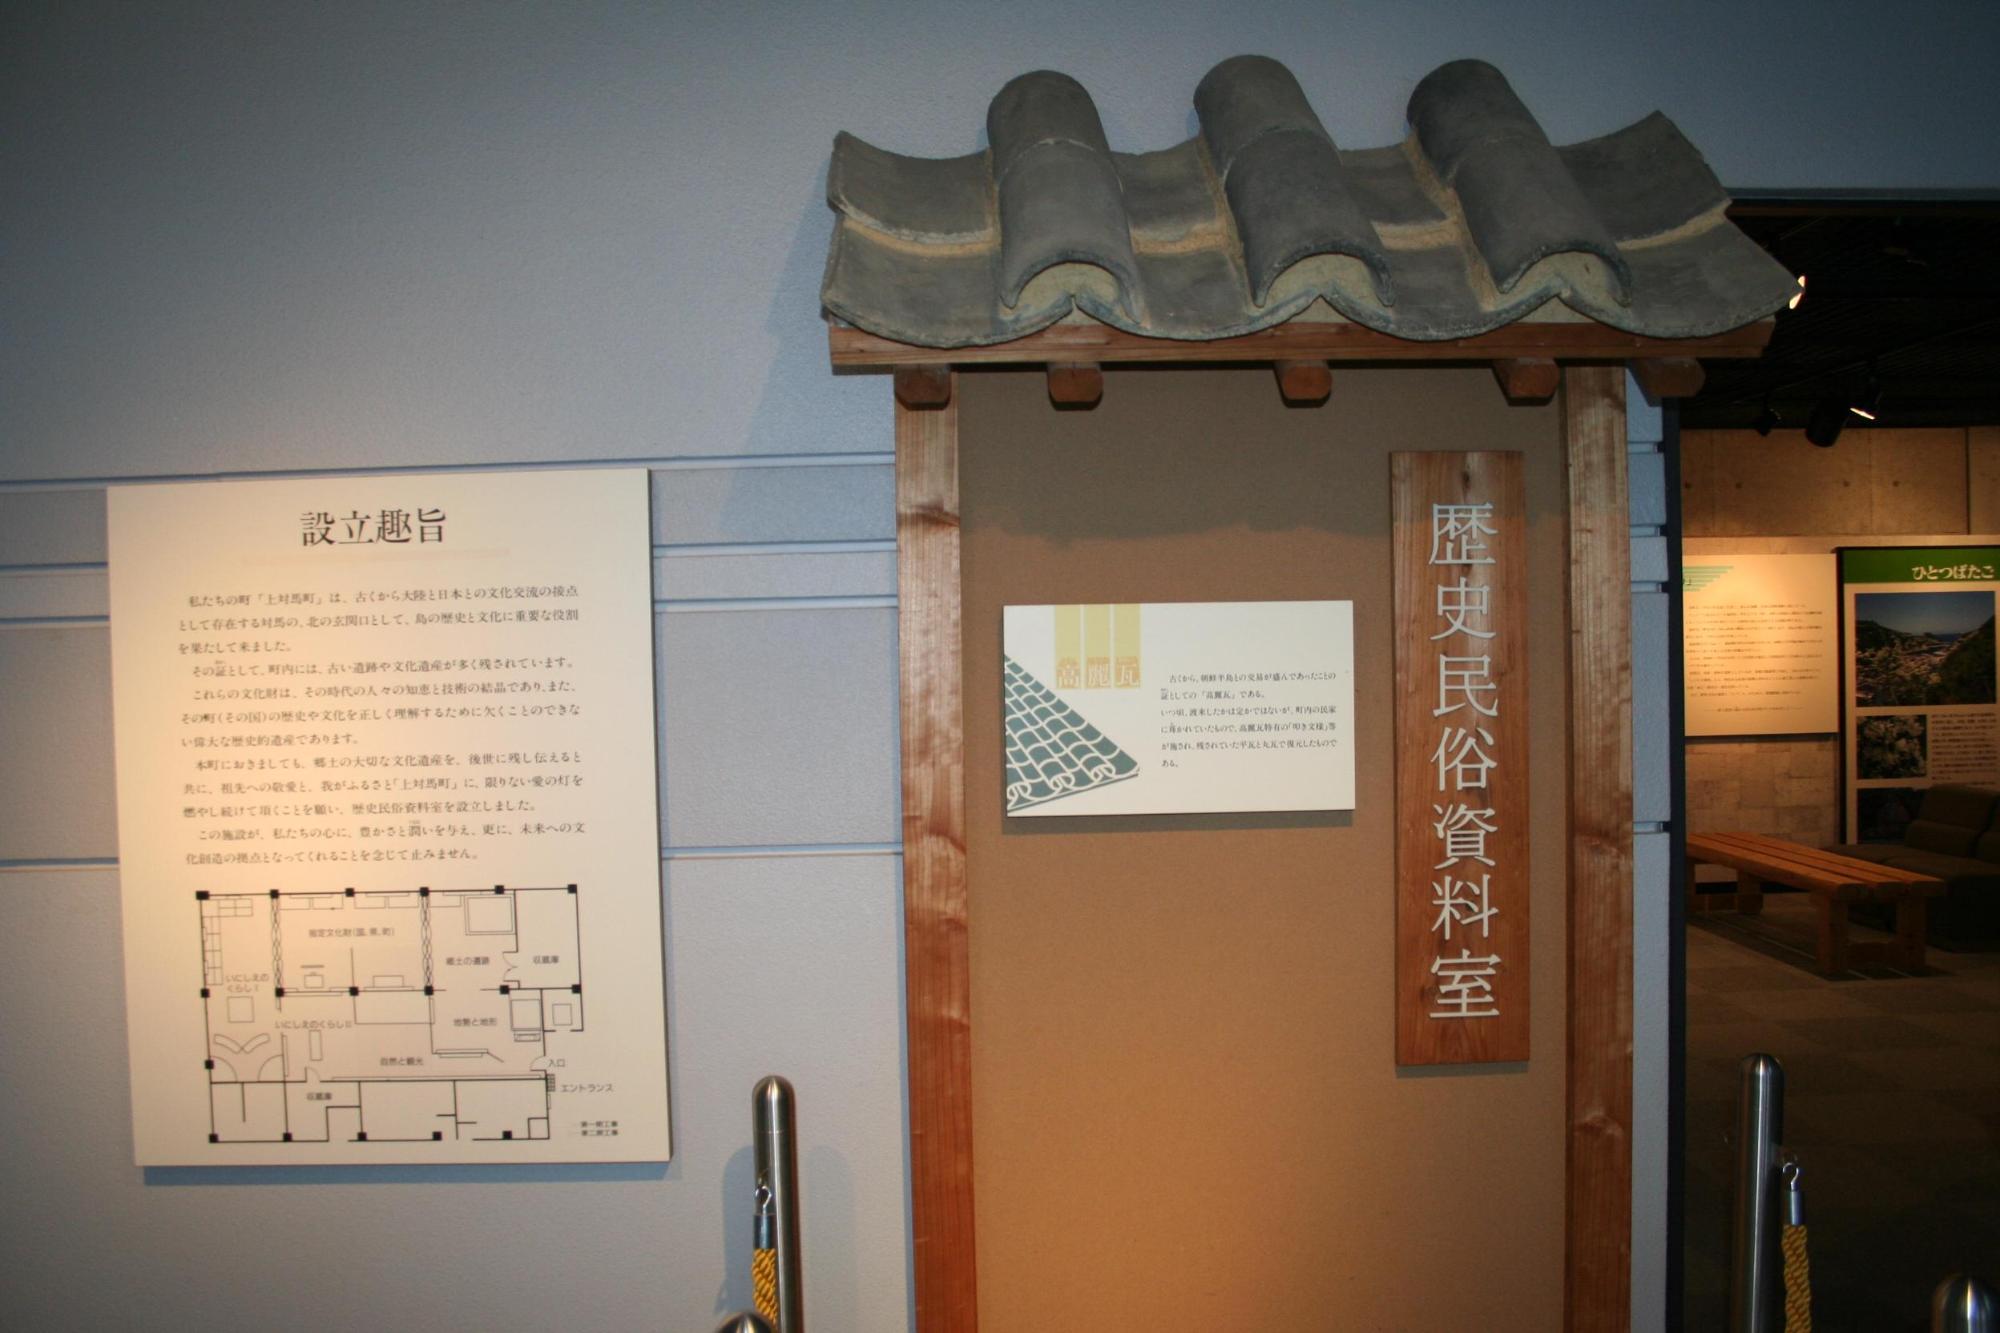 歴史民俗資料室の入り口と案内板の写真